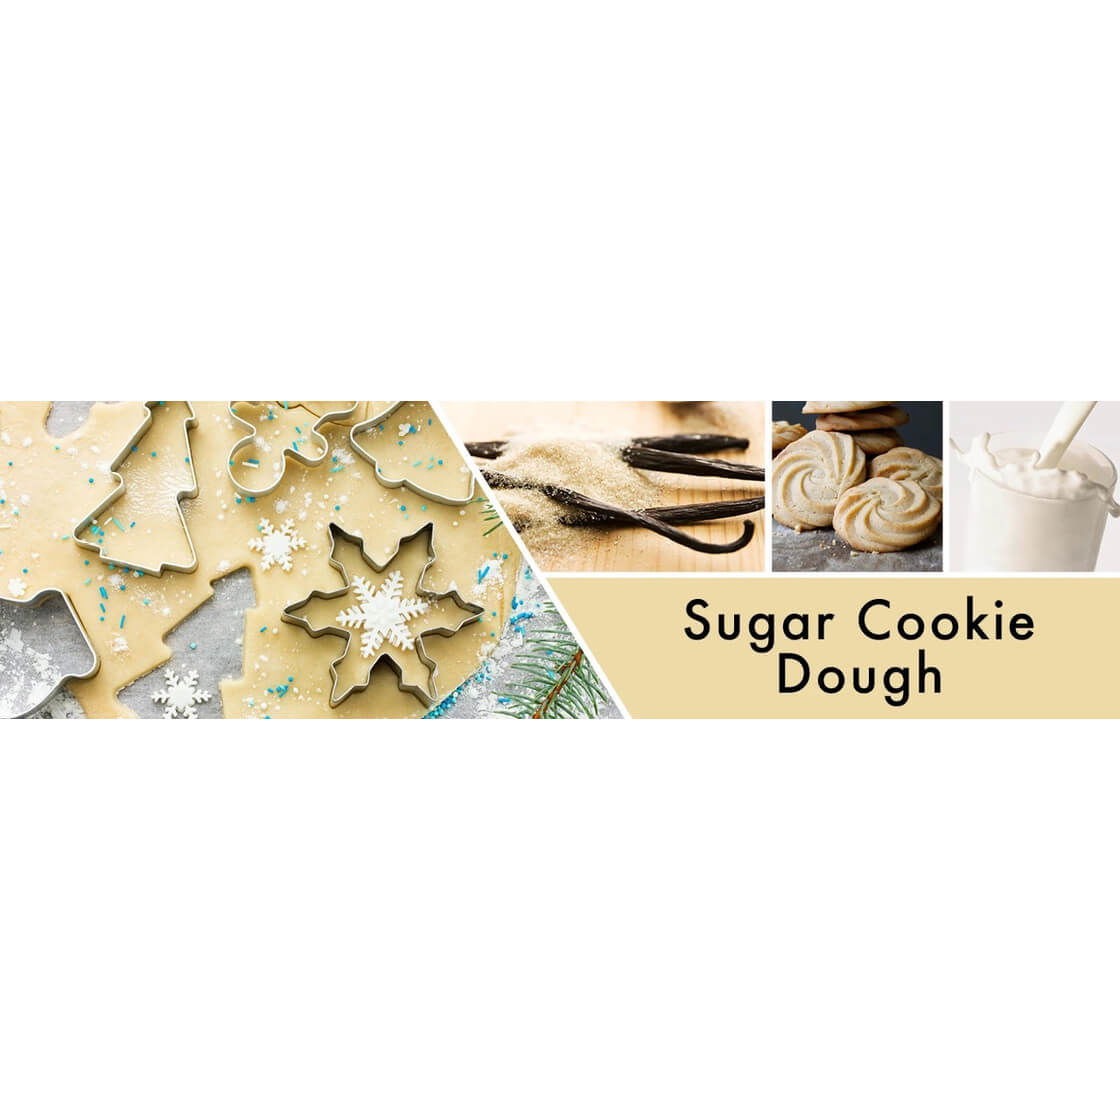 Sugar Cookie Dough 59g